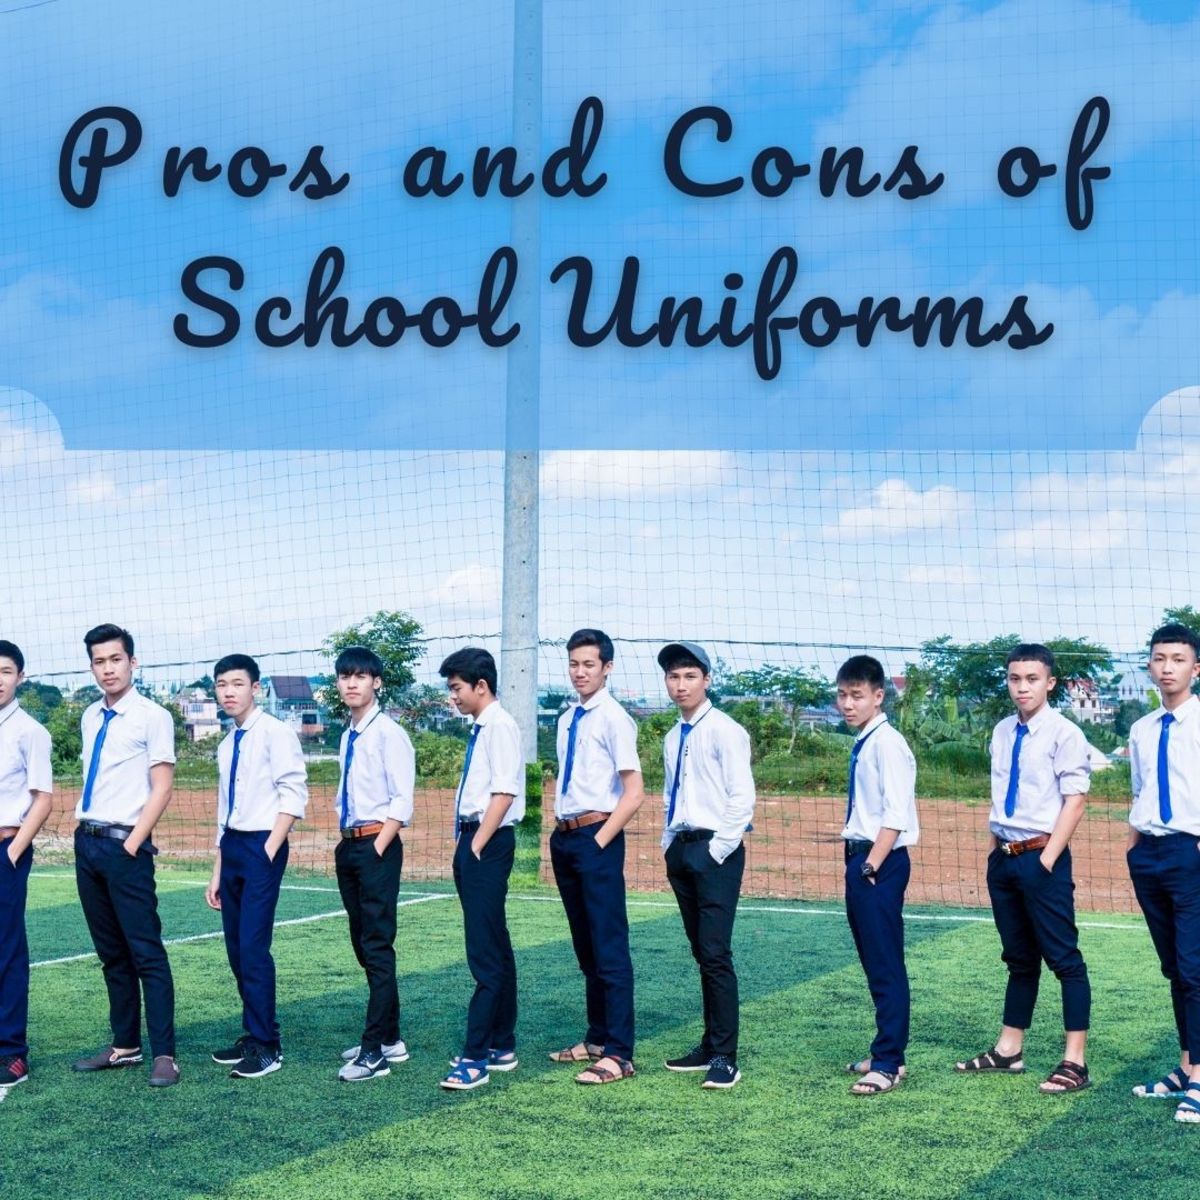 The School Uniform Debate: Pros and Cons of School Uniforms